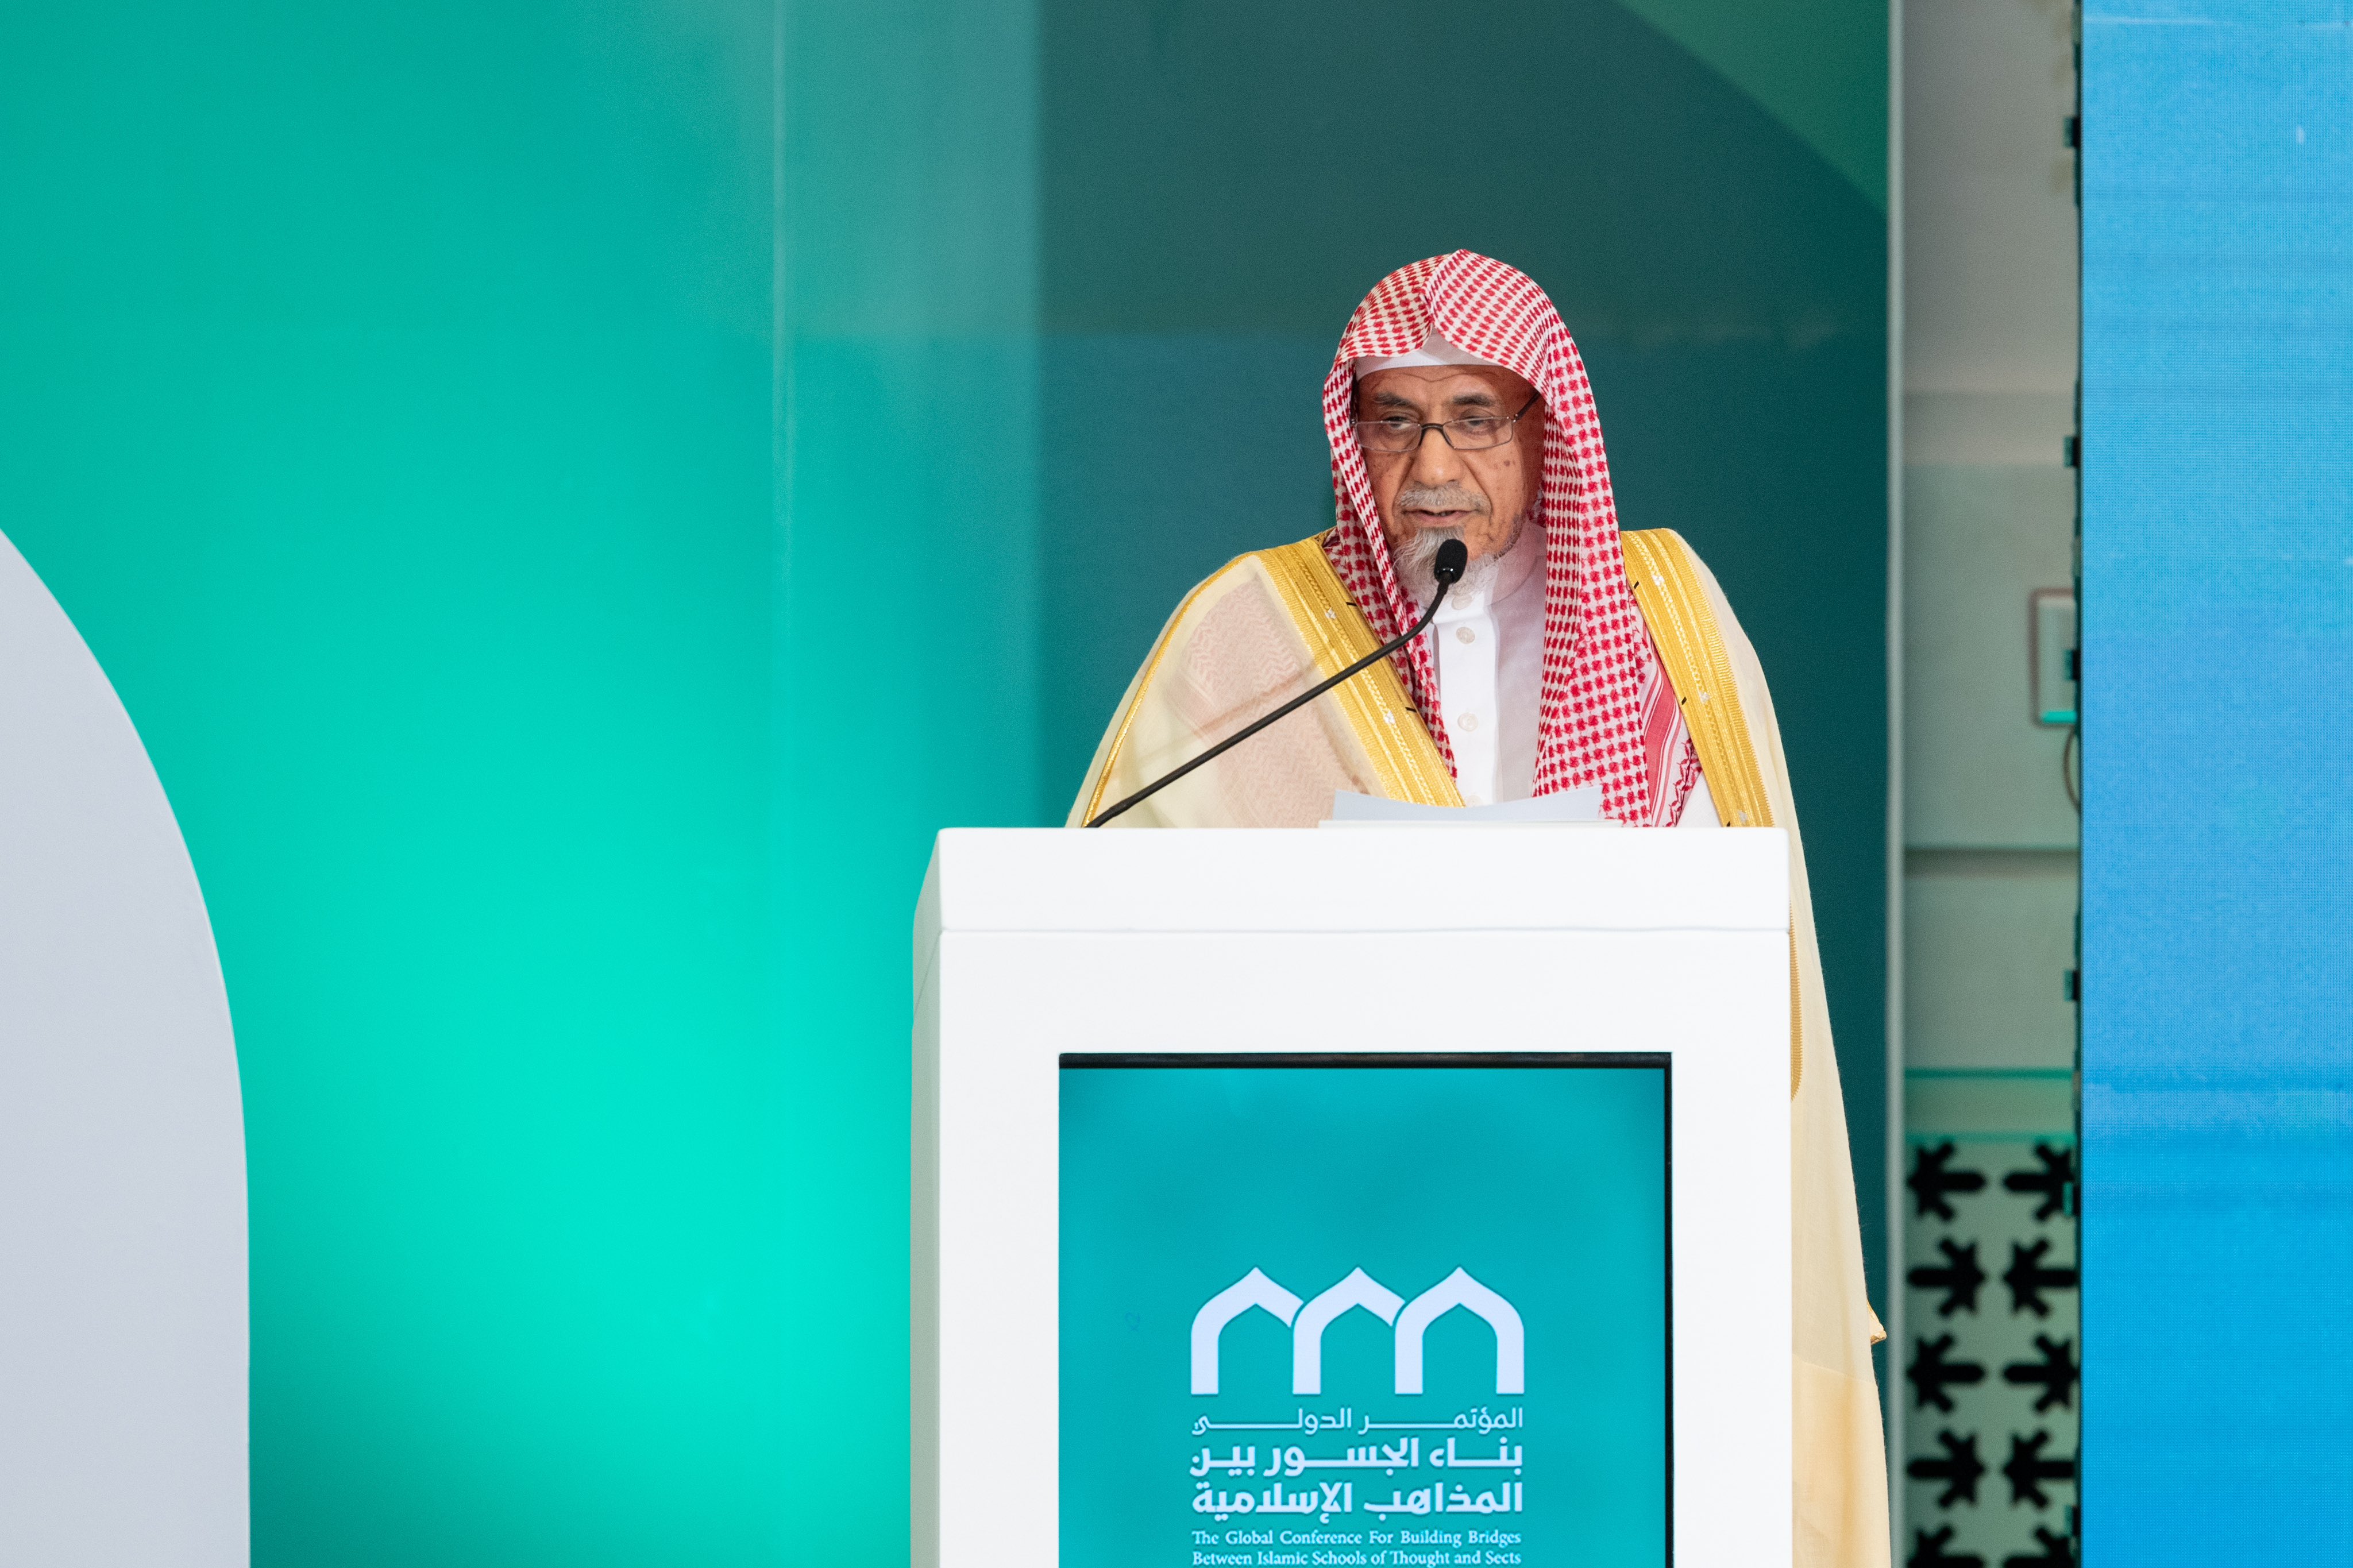 مشیر دیوانِ ملکی، امام وخطیب مسجدِ حرام اور رکن ہیئۃ کبار العلماء عزت مآب شیخ ڈاکٹر صالح بن حمید اسلامی مذاہب کے درمیان پلوں کی تعمیر کانفرنس کے اختتامی اجلاس سے خطاب کررہے ہیں: